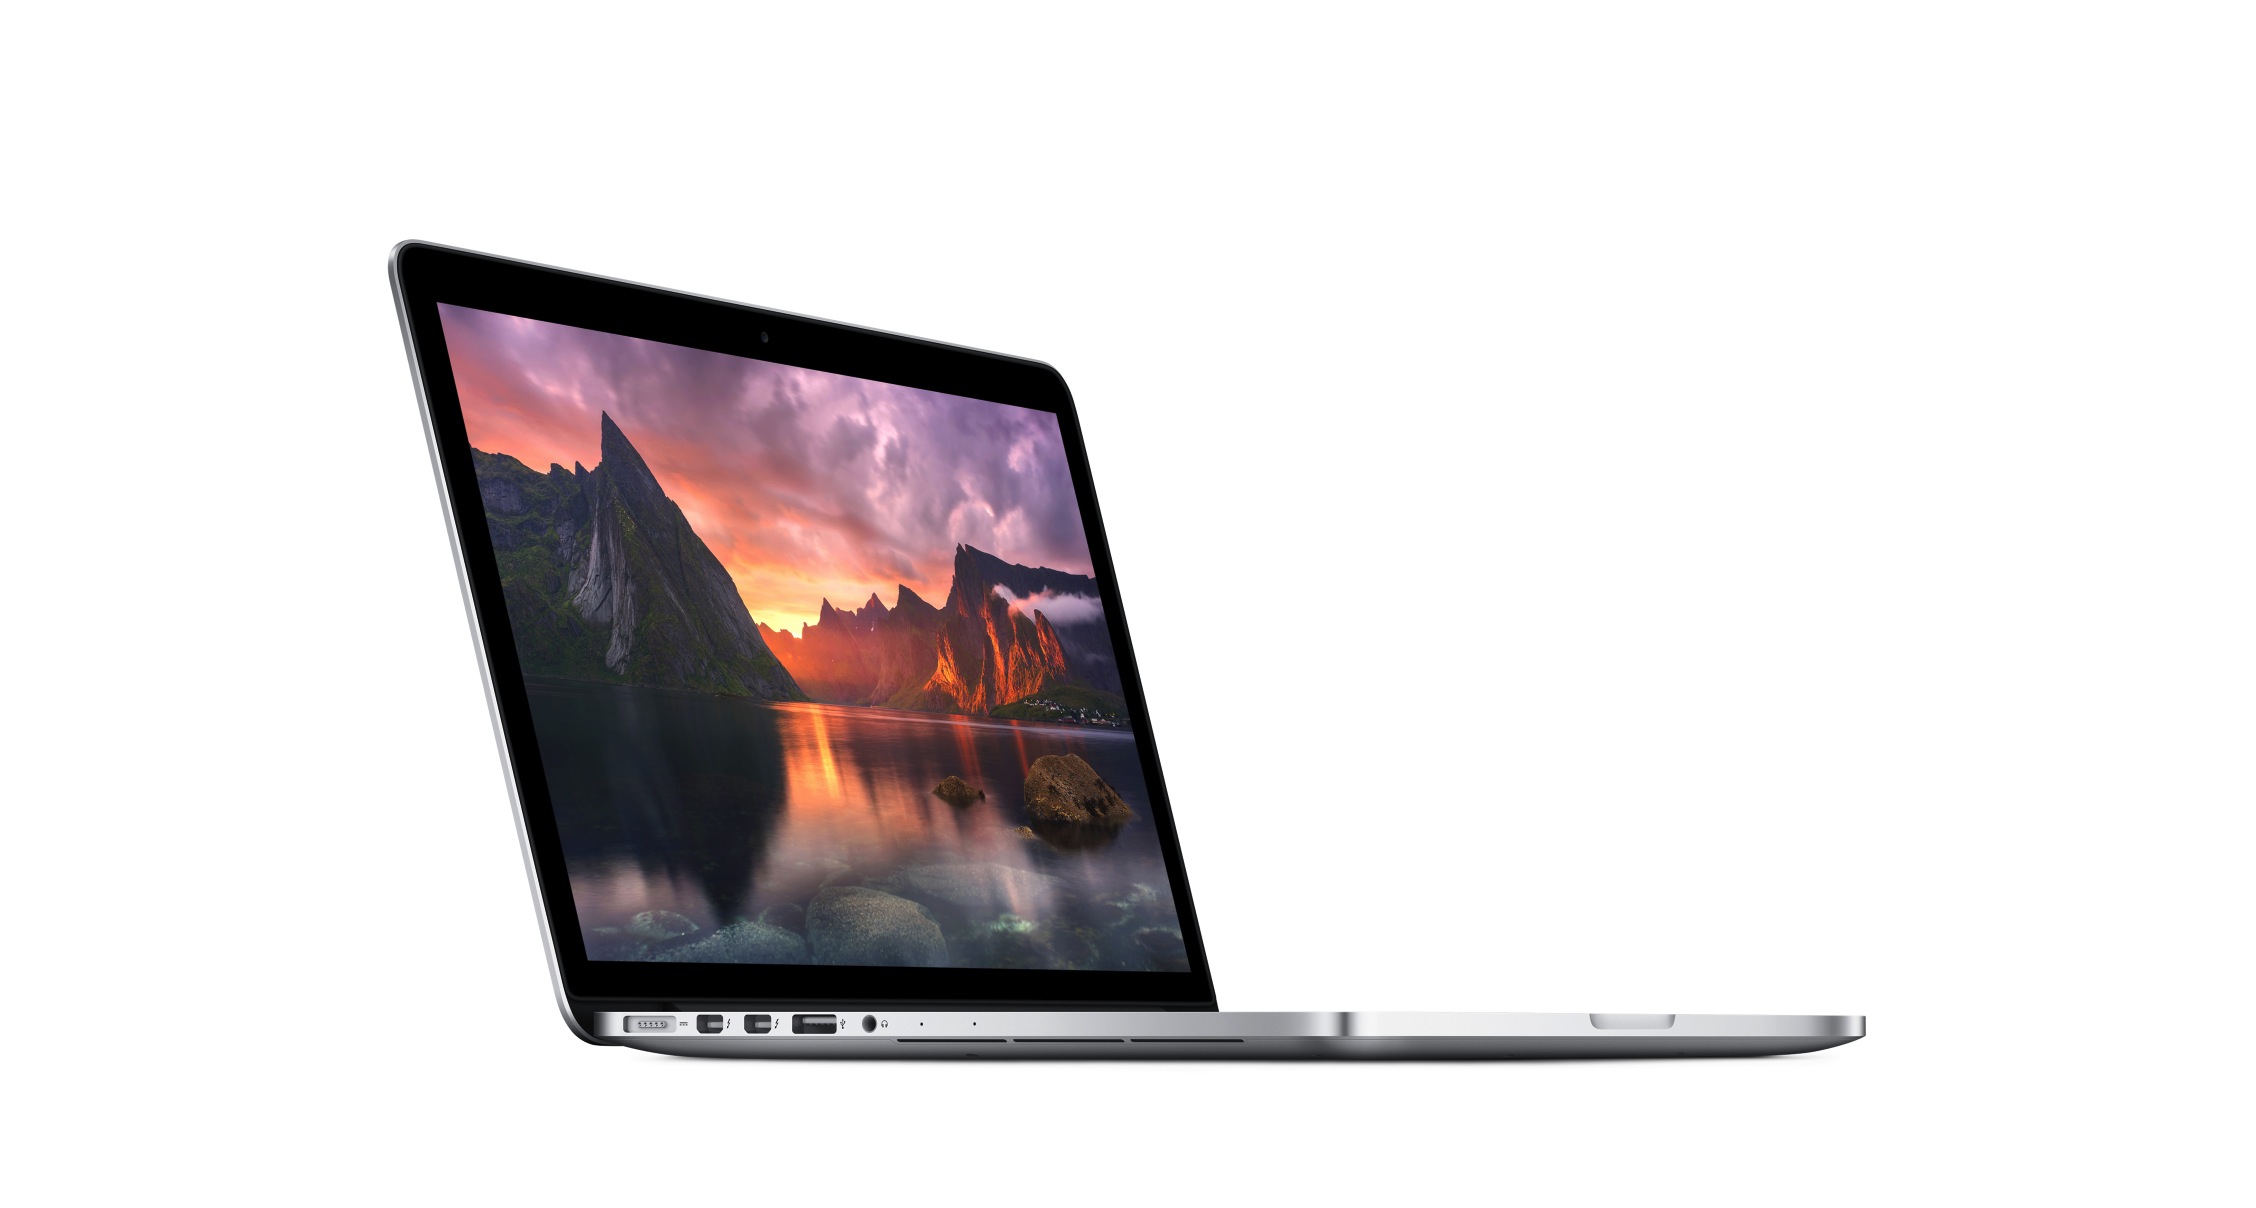 تصاویر گوشی ME864-MacBook Pro -Retina- 13-inch-2013-i5-128 SSD -INTEL